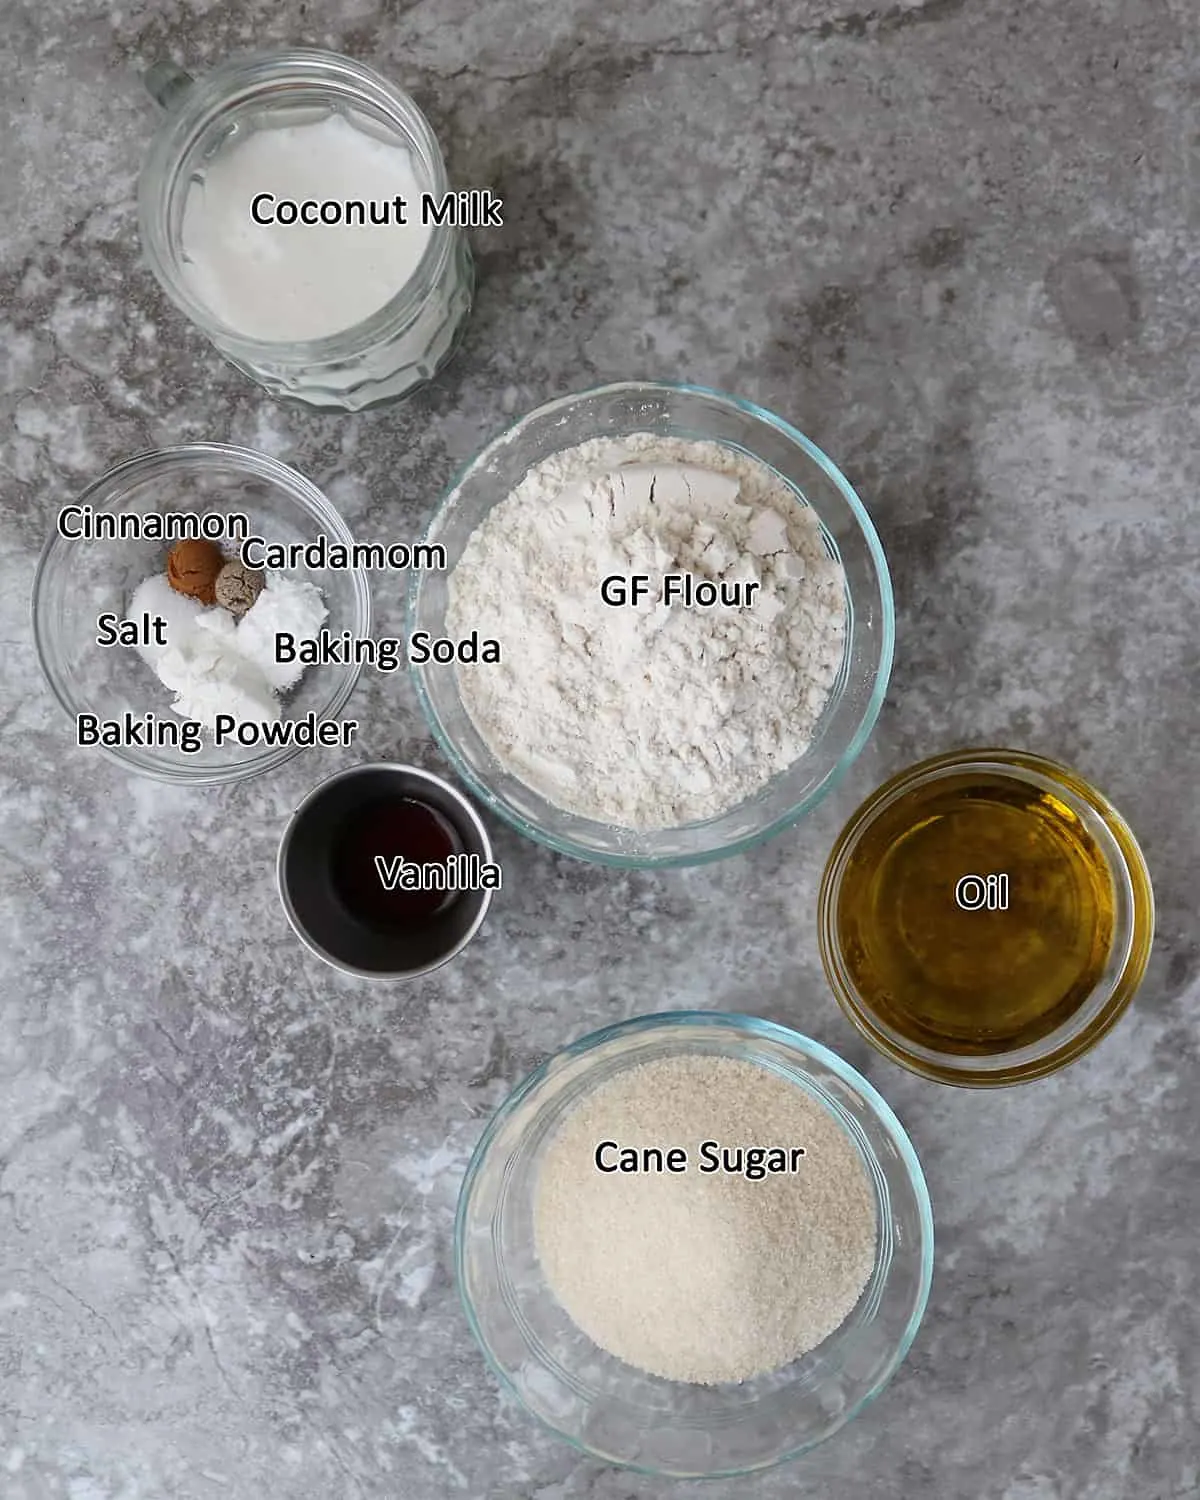 Ingredients to make vegan Cupcakes